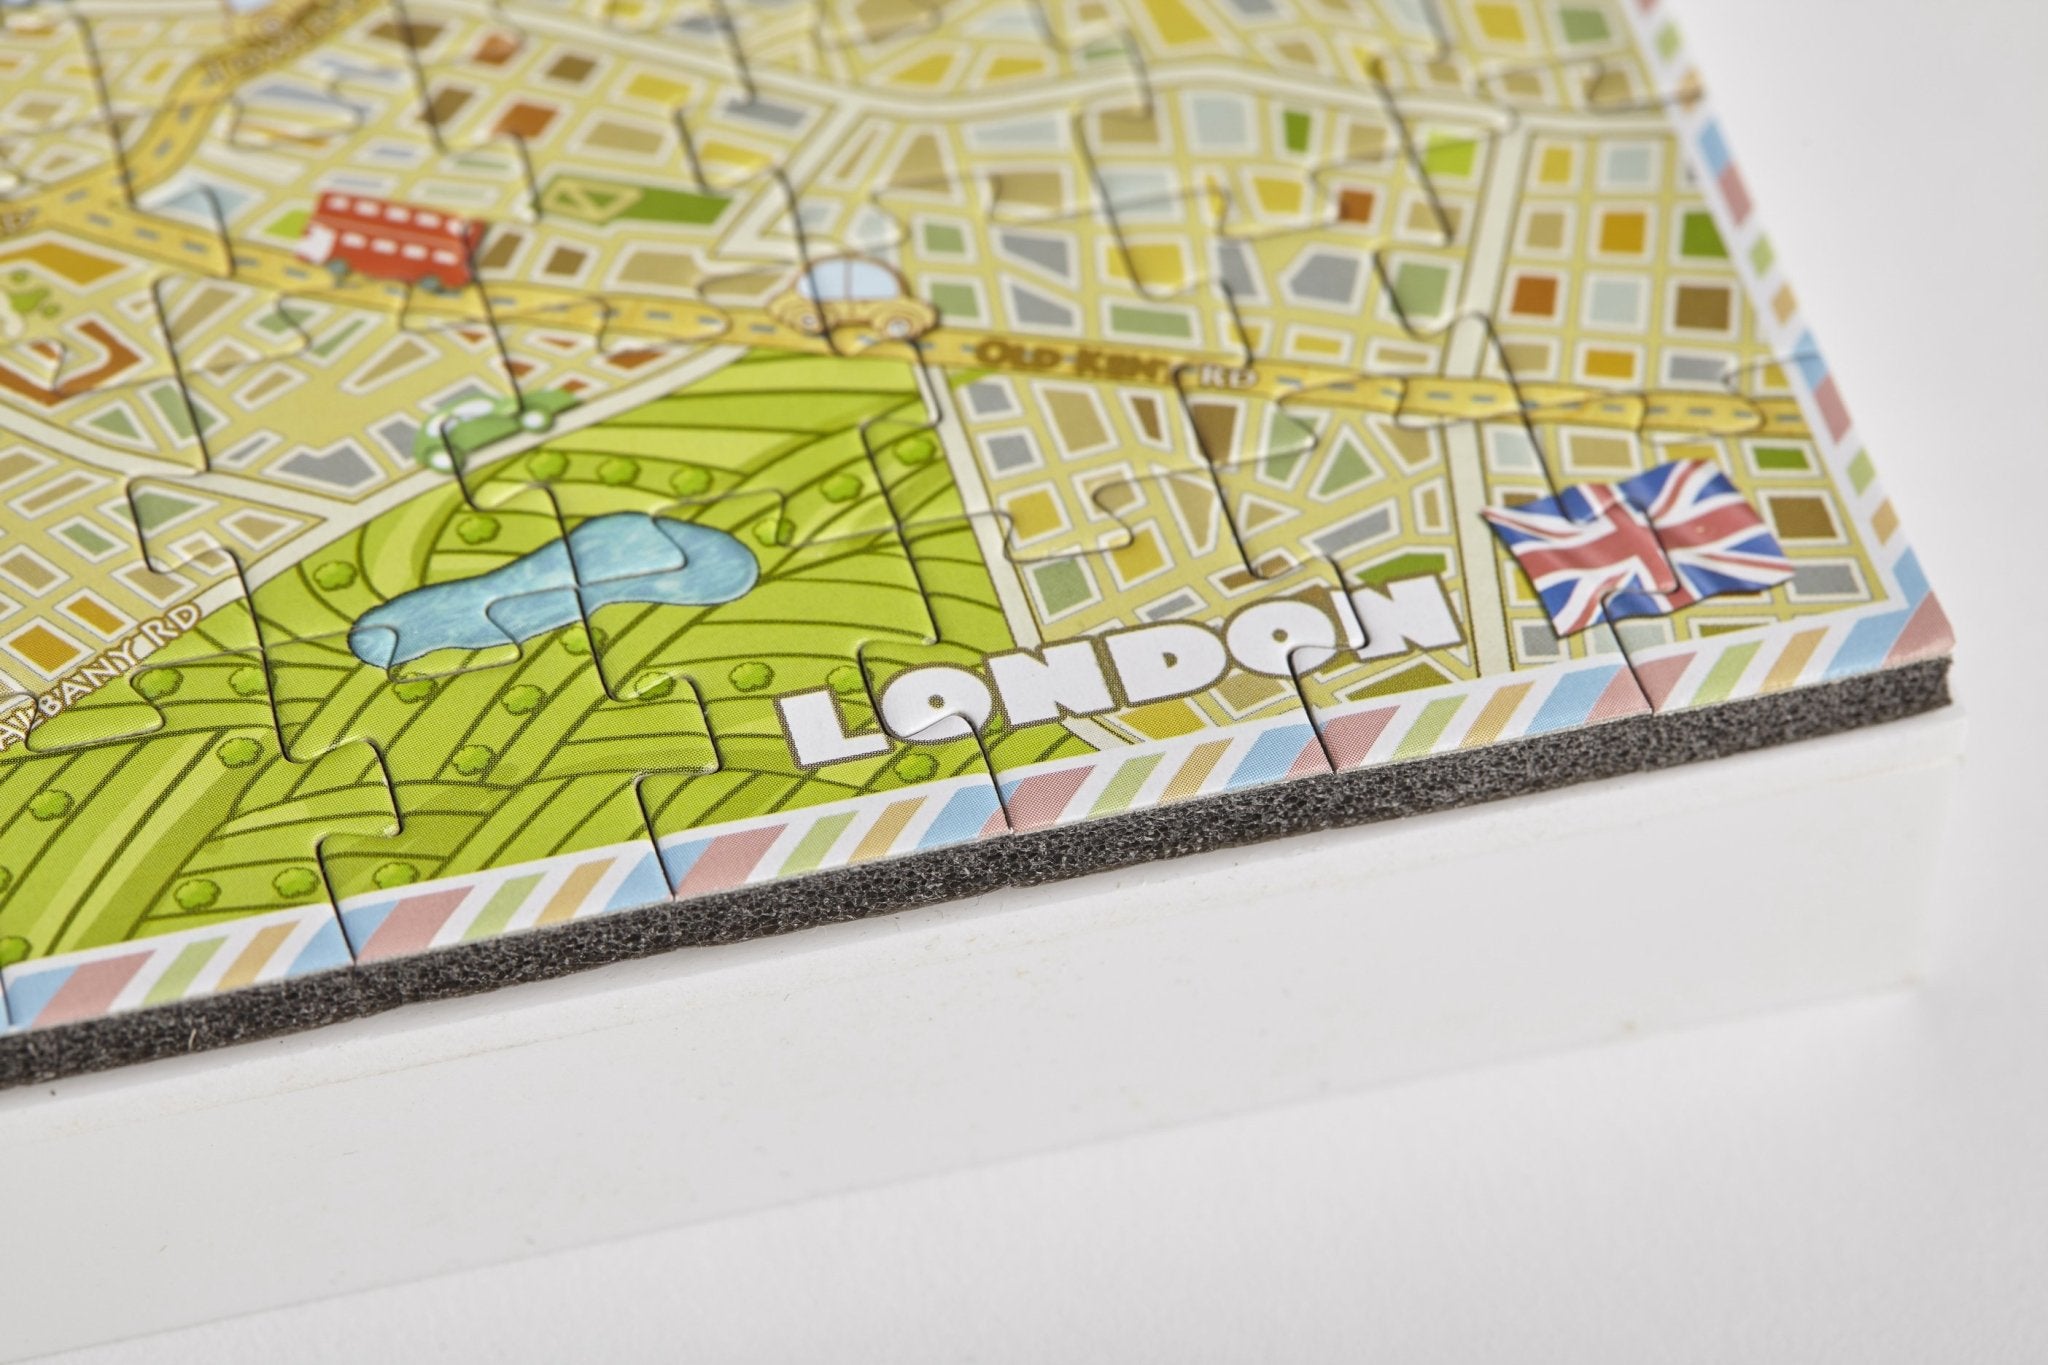 4D Cityscape Mini London Puzzle - 4DPuzz - 4DPuzz
